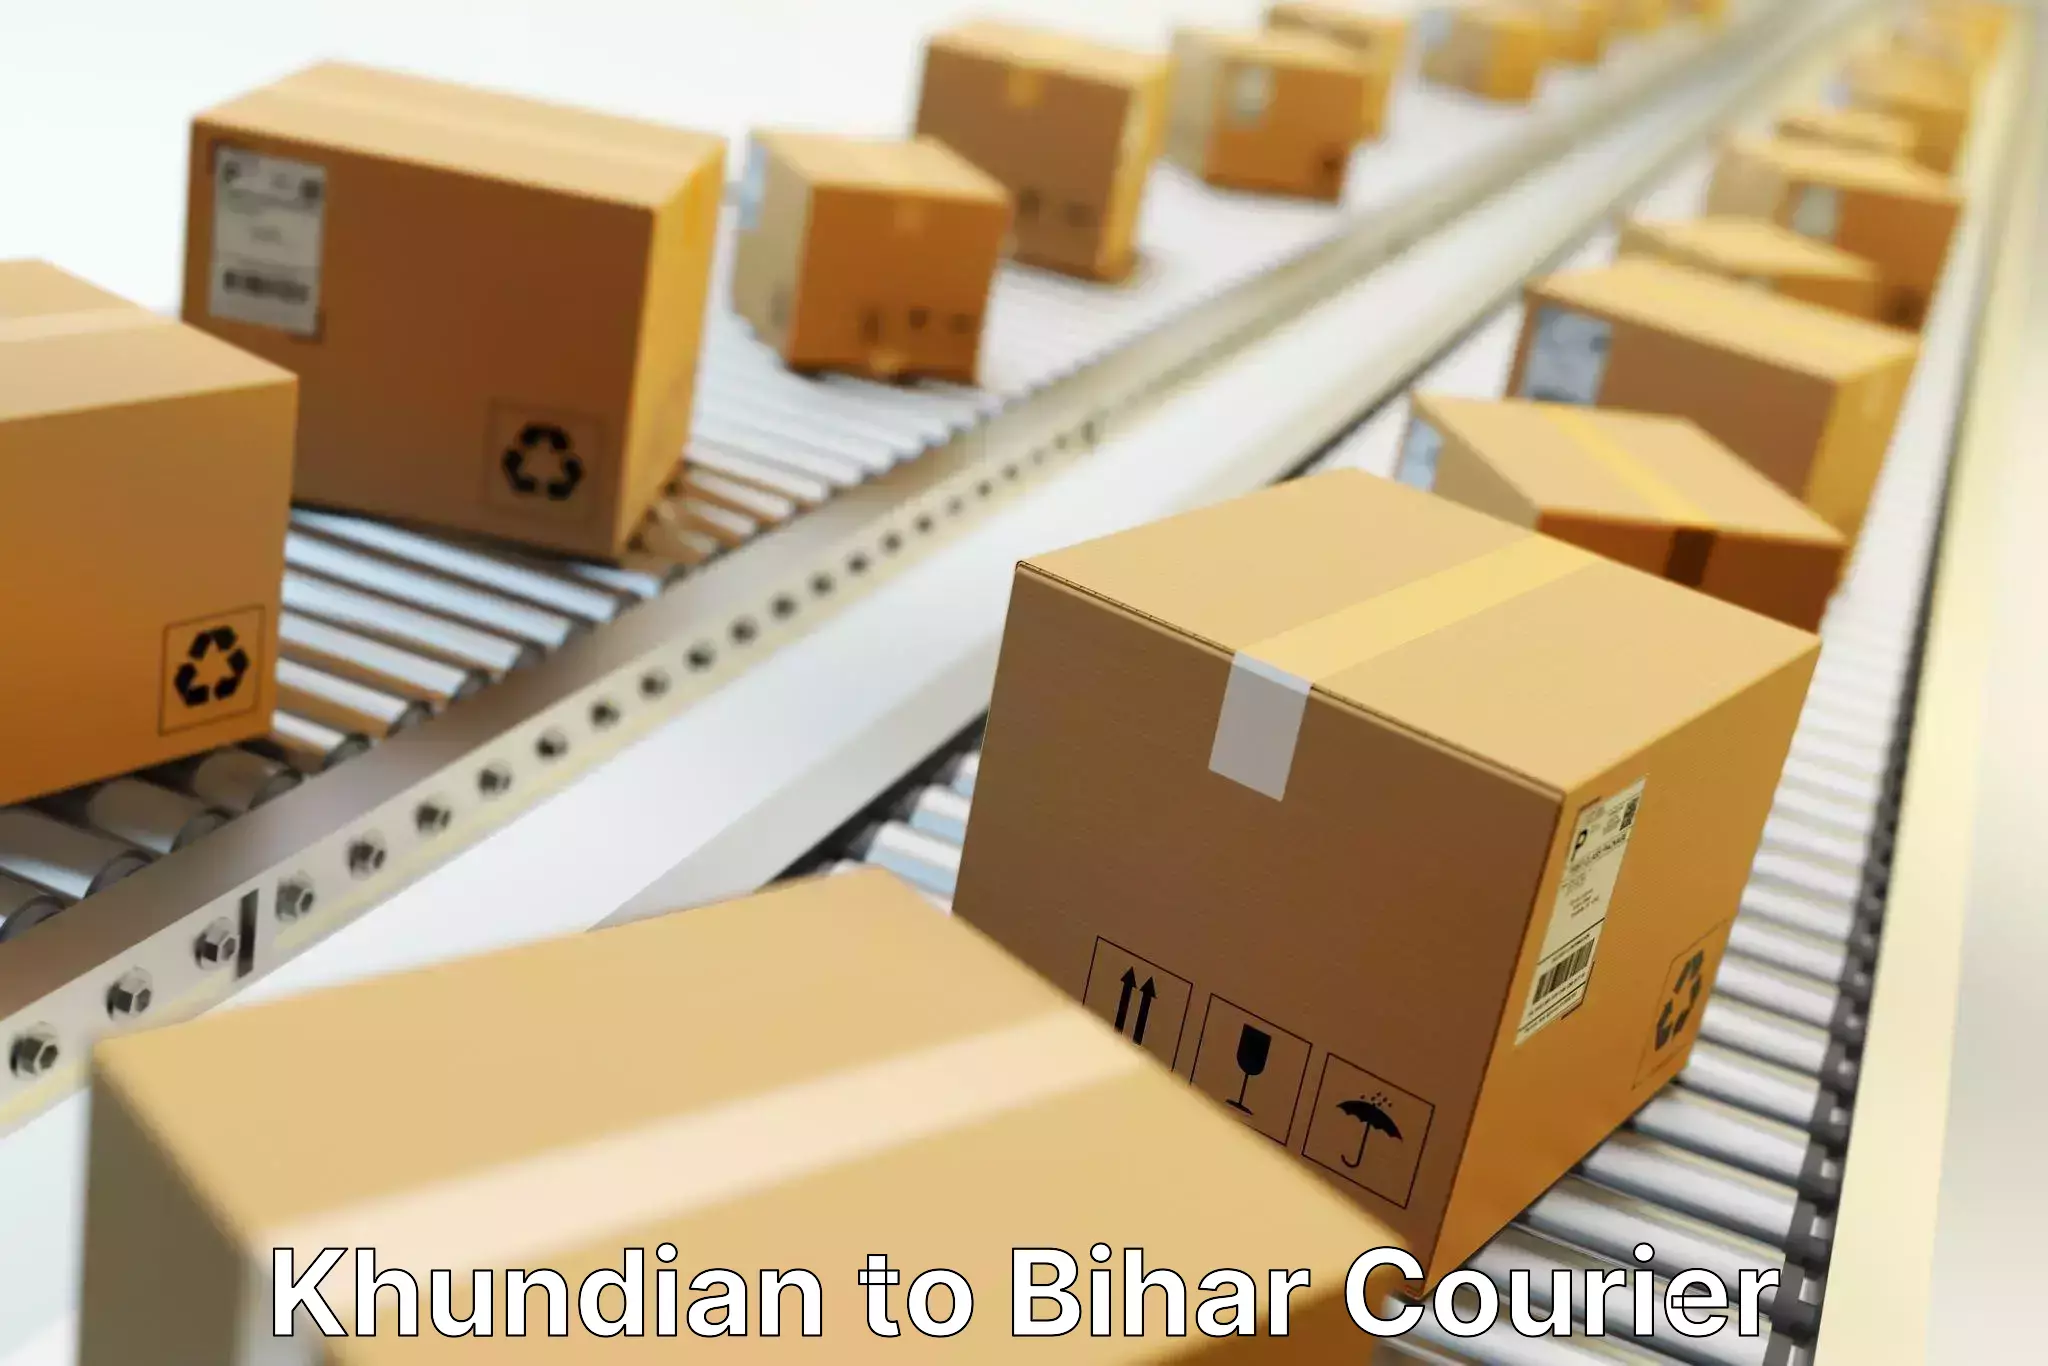 Door-to-door shipment Khundian to Bankipore